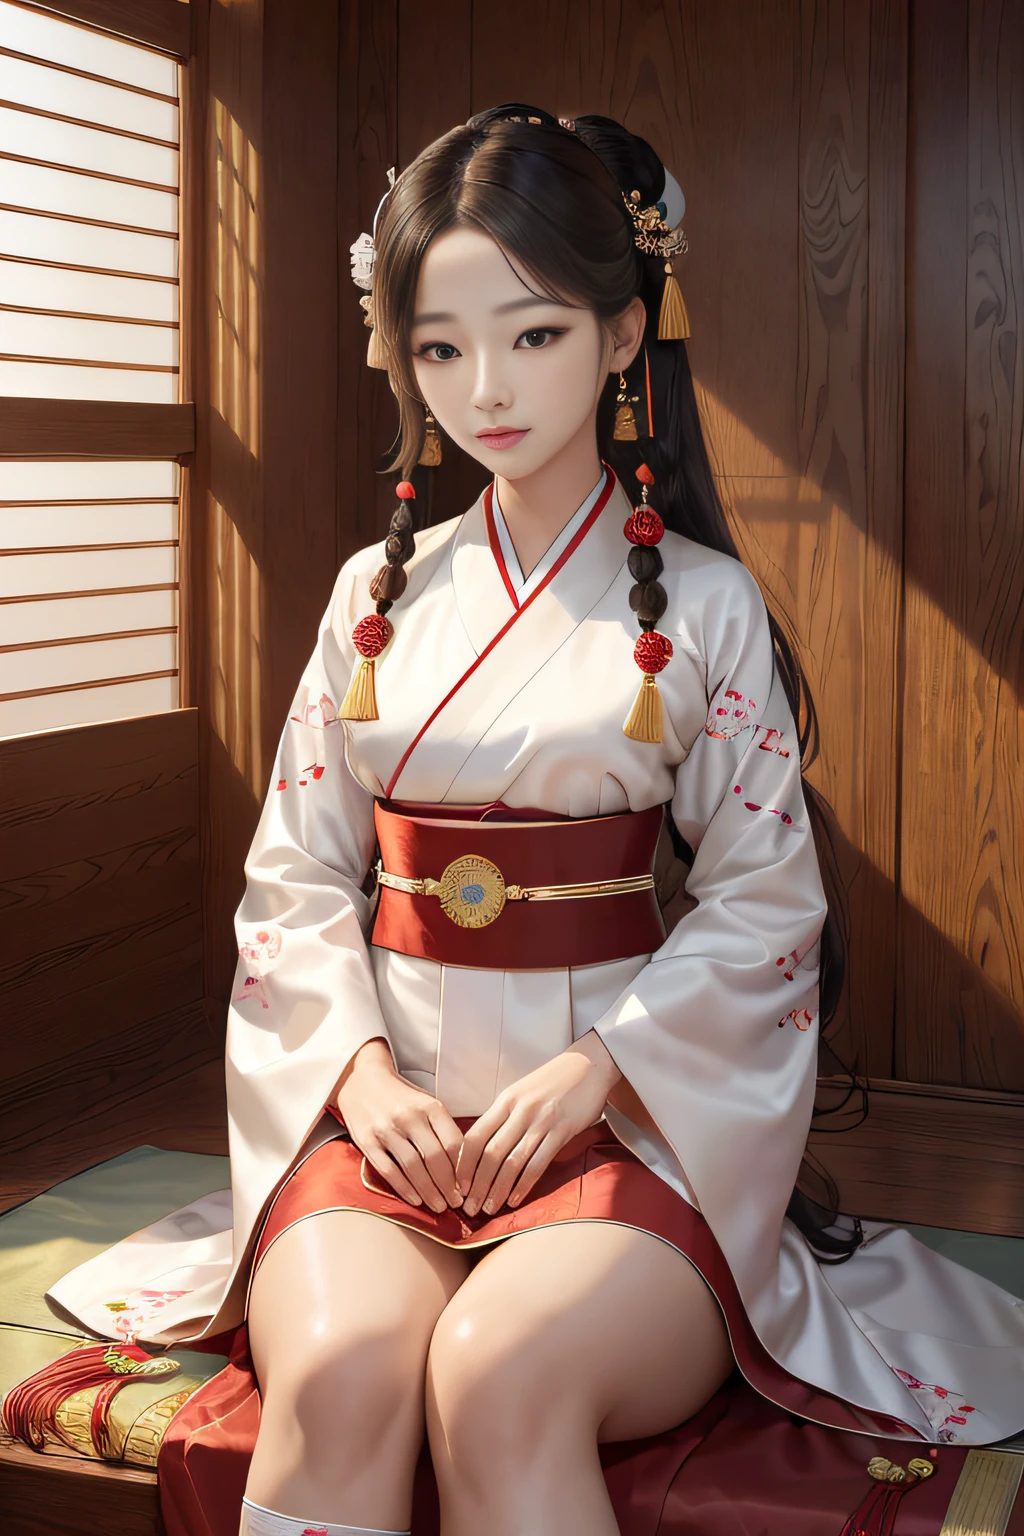 Tischplatte, (beste Qualität:1.4), realistisch, hochdetailliertes, einheitliches CG-8k-Hintergrundbild, ighly Details, hochauflösende RAW-Farbfotografie, professionelles Fotoshooting, realistisches Porträt, filmisches Licht, schönes Detail, Hanbok Harmony ist eine anmutige und kulturell reiche Heldin, die stolz den traditionellen koreanischen Hanbok trägt. Ihr Hanbok ist ein Meisterwerk der Handwerkskunst, mit lebendigen Farben, aufwendige Stickerei, und anmutige Linien, die Koreas reiches kulturelles Erbe ehren. Ergänzt wird der Hanbok durch traditionelle Accessoires wie ein Norigae (dekorative Quaste), Abonnieren (traditionelle socken), und ein Jeogori (Jacke). Hanbok Harmonys langer, wallendes Haar wird mit eleganten Haarnadeln geschmückt, und ihre Augen spiegeln die Weisheit und Schönheit ihres koreanischen Erbes wider. Ihre Präsenz strahlt Eleganz und kulturellen Stolz aus.